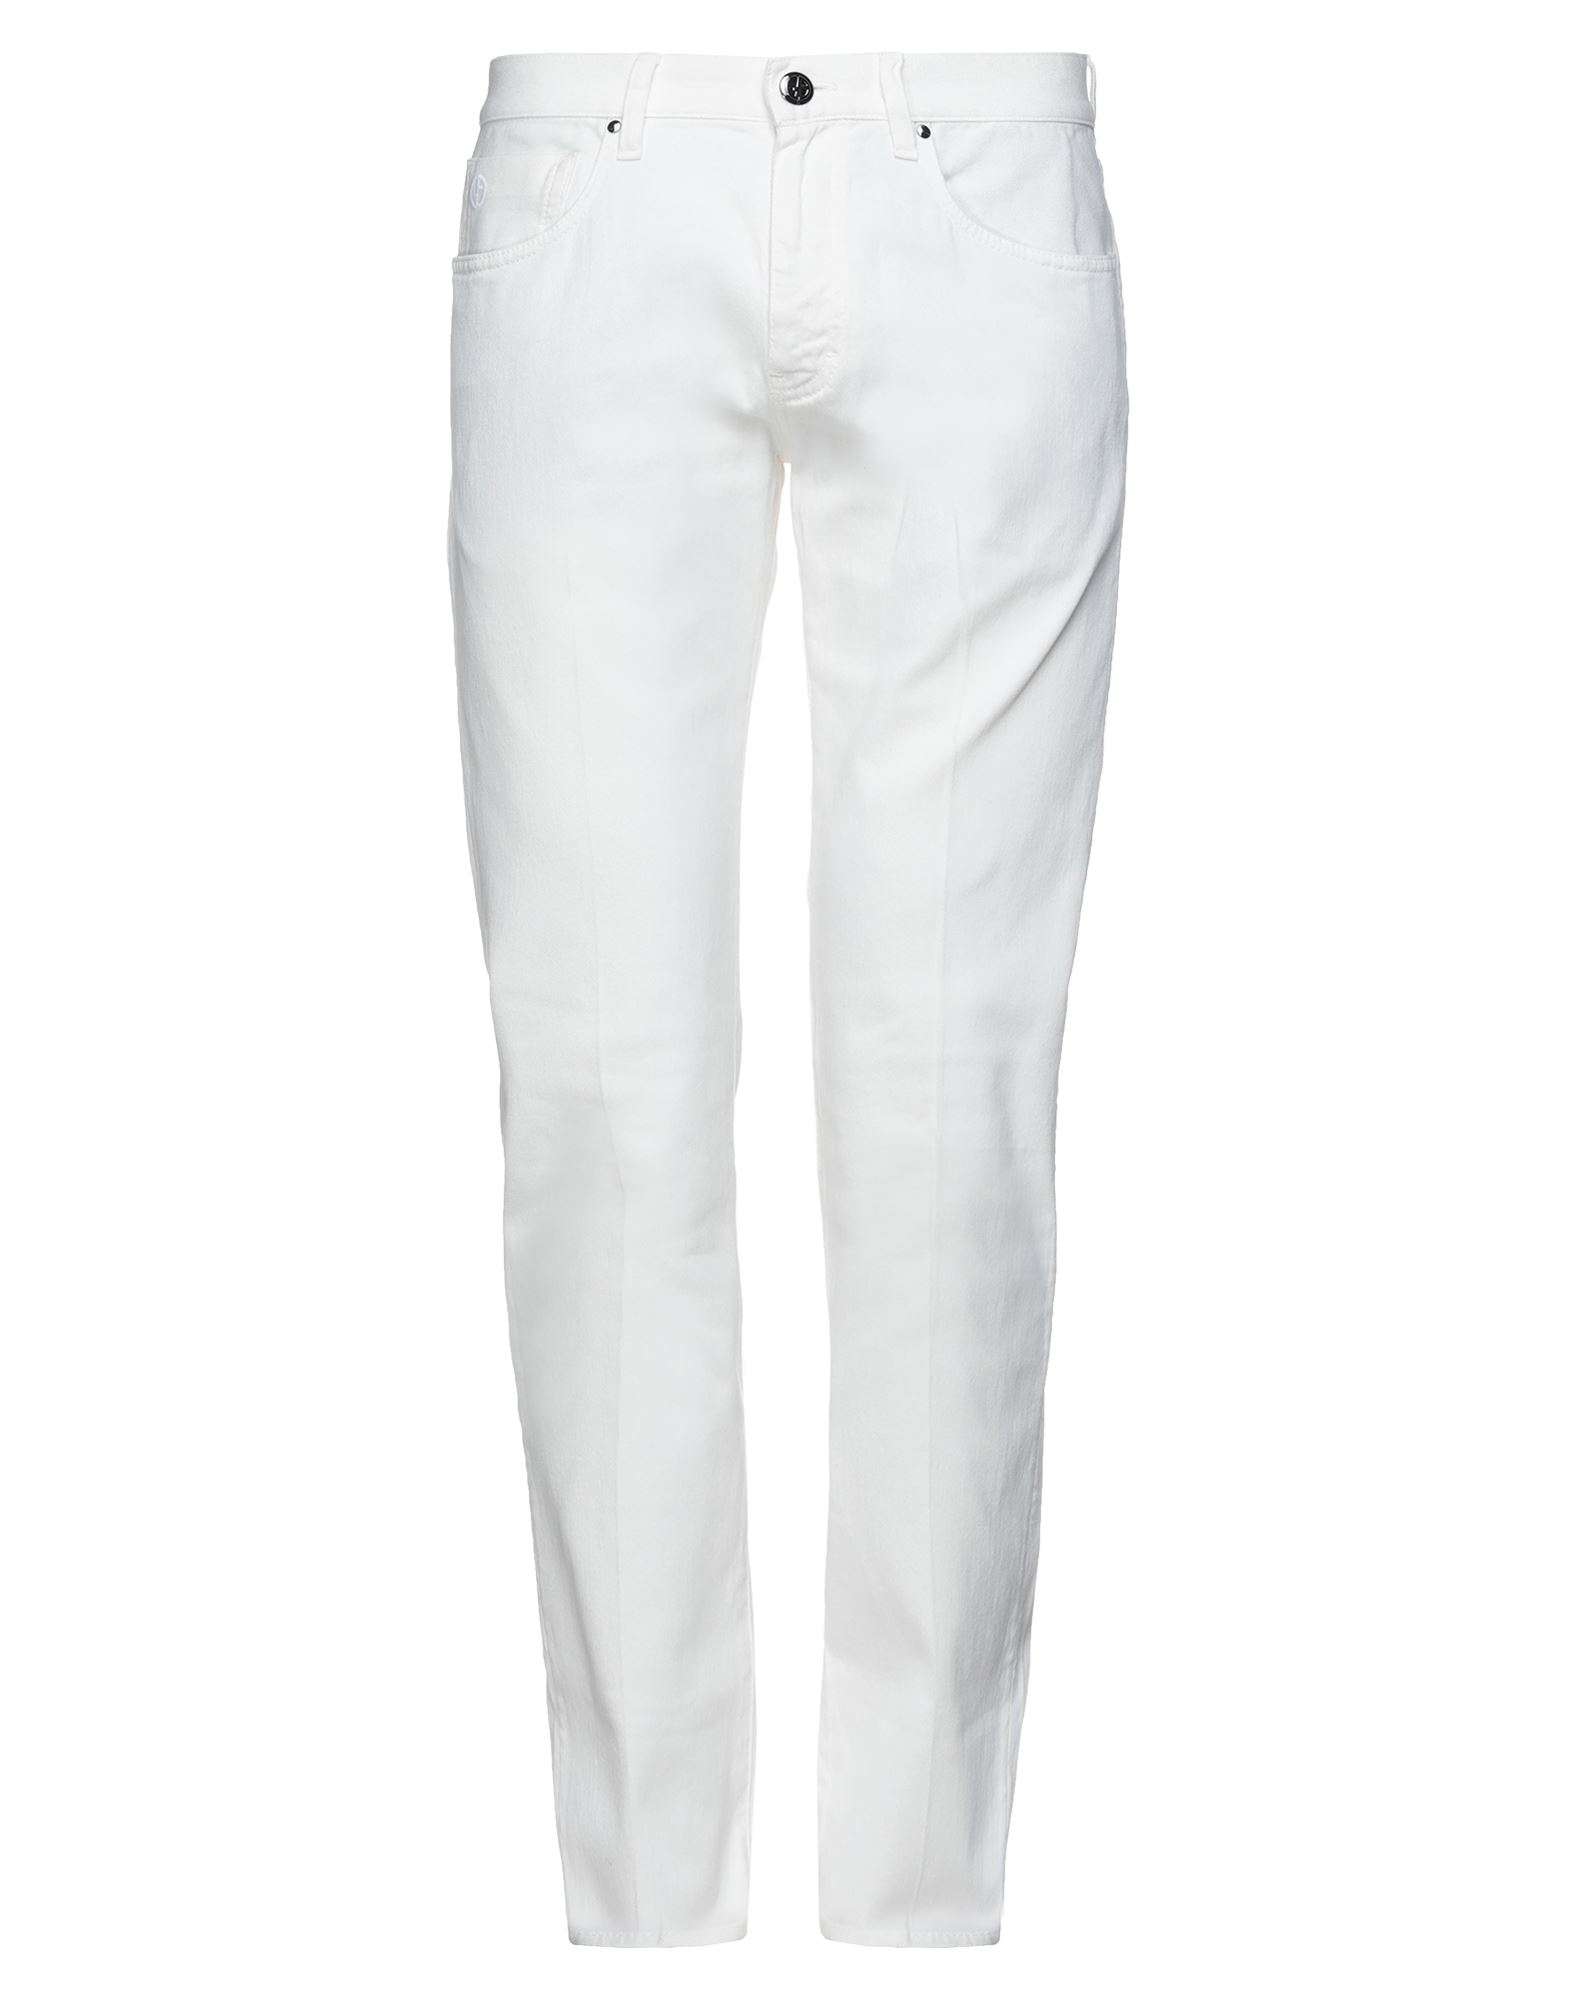 Shop Giorgio Armani Man Jeans White Size 30 Cotton, Elastane